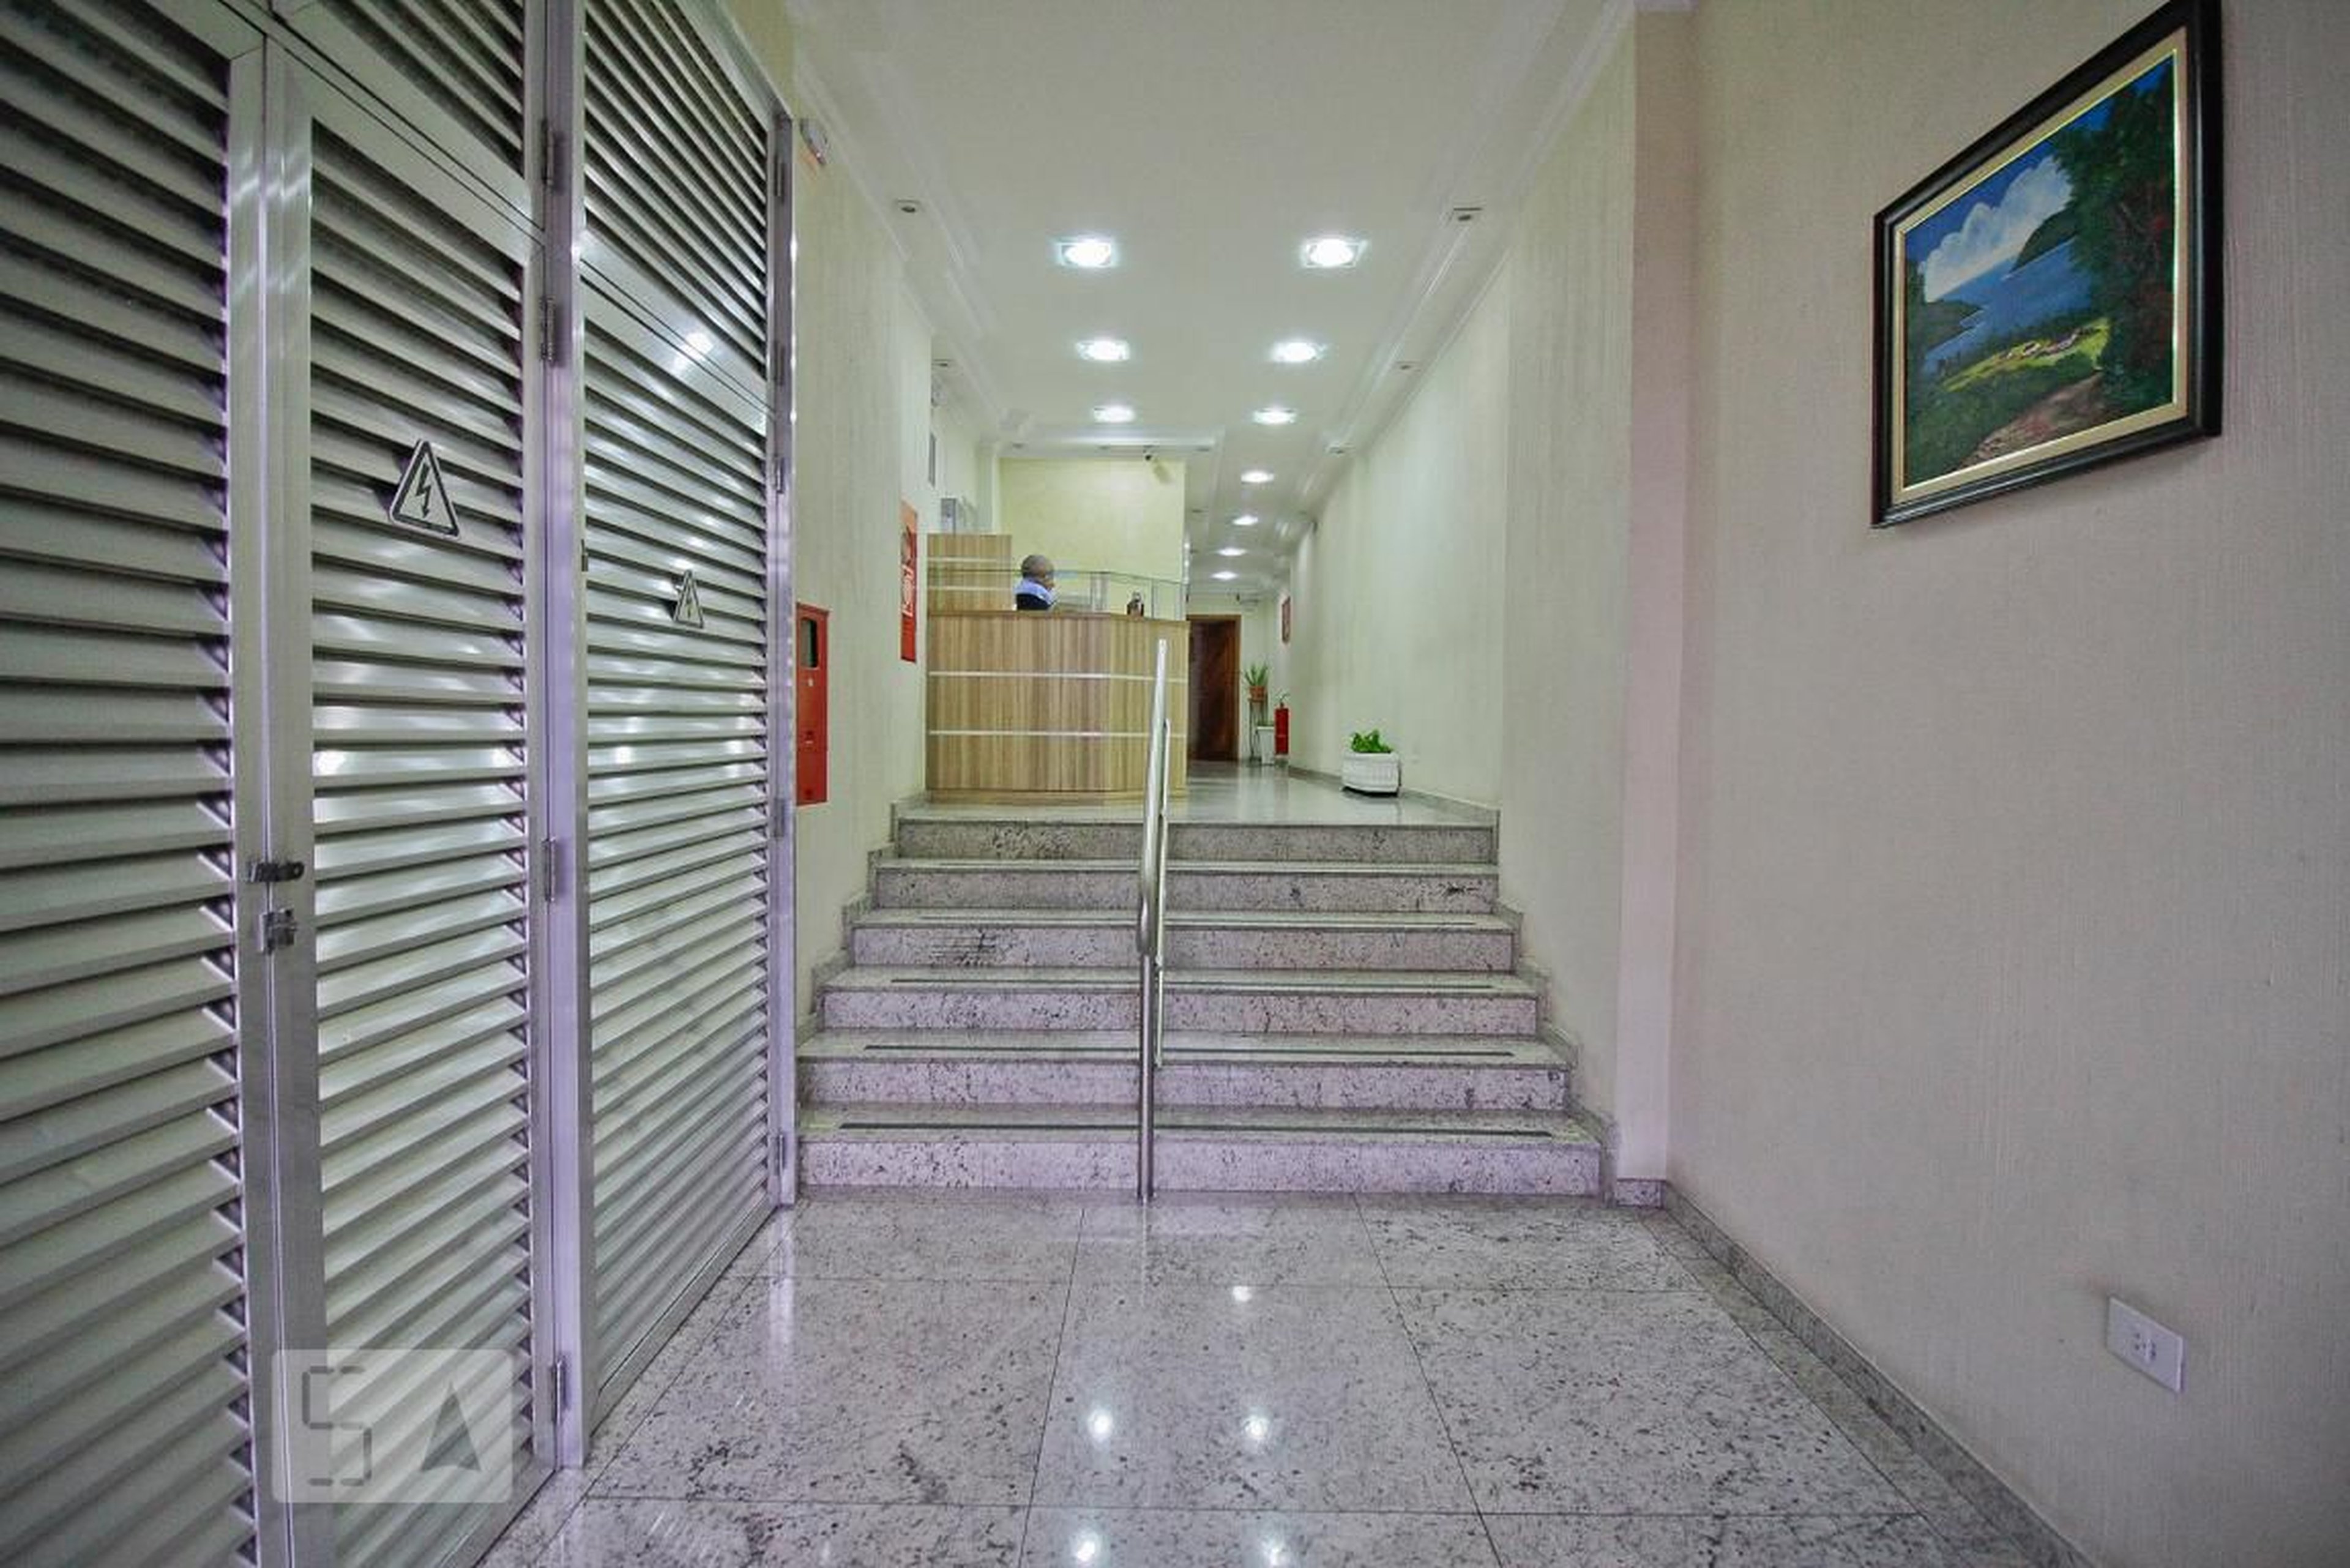 Hall de Entrada - Manoel Abreu